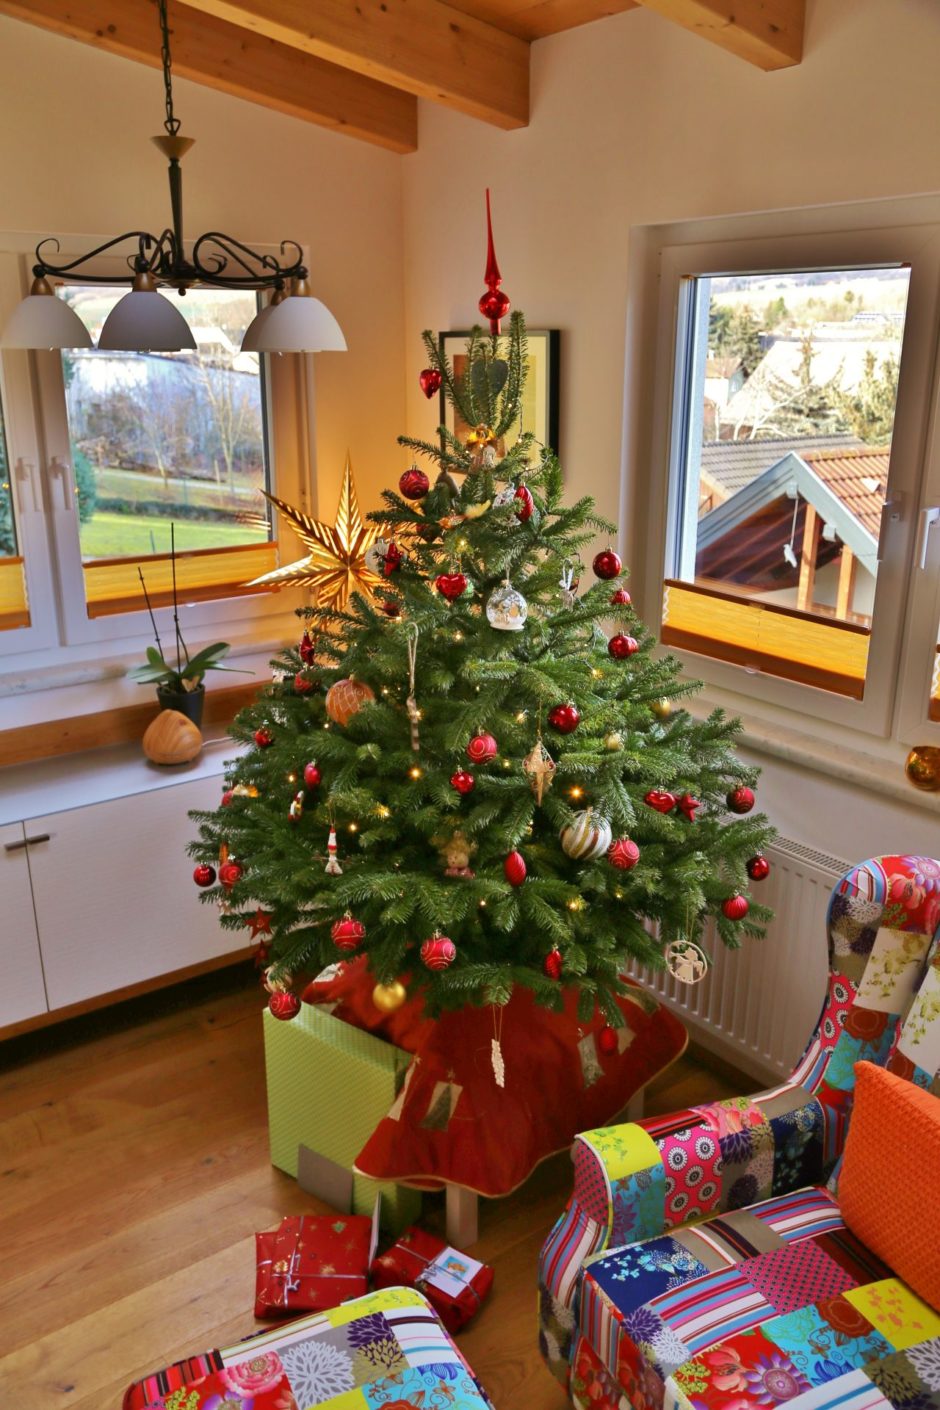 Ein Christbaum aus der Heimat macht das Weihnachtsfest perfekt. - Baum, Christbaum, Christbaumschmuck, Geschenke, Nordmann-Tanne, Tannen, Weihnachten, Wohnzimmer - (Niederleis, Niederösterreich, Österreich)